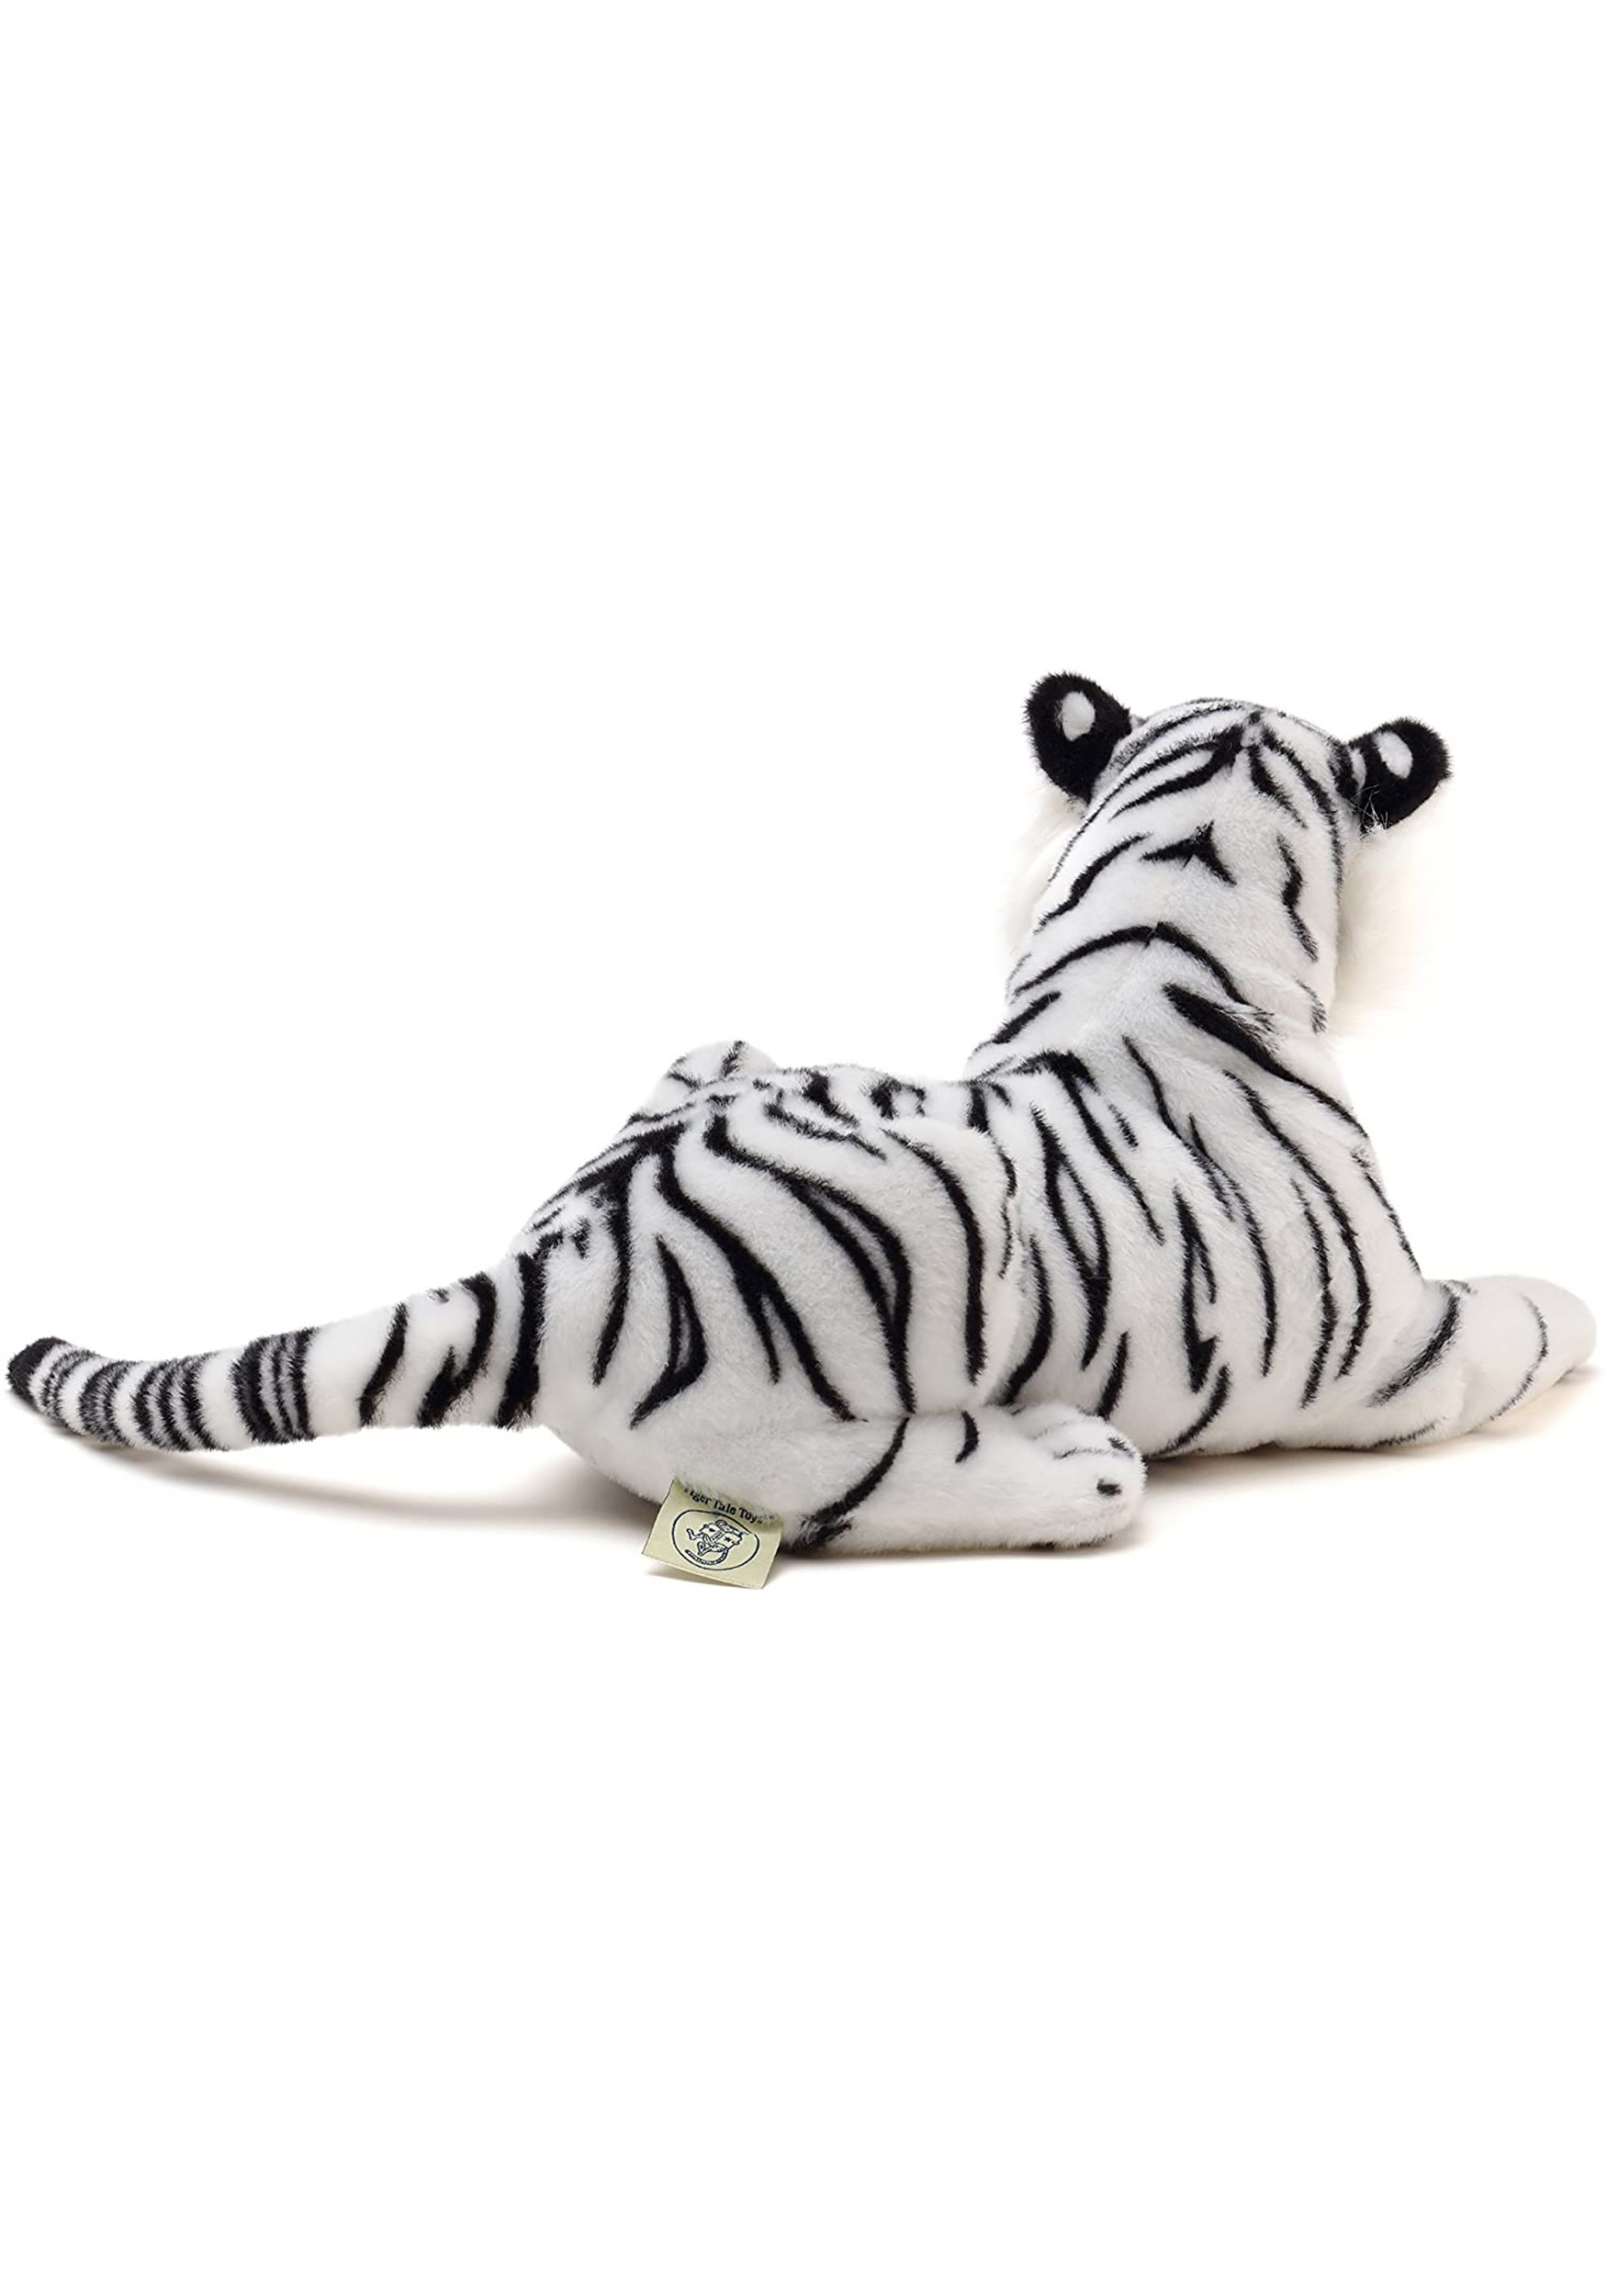 Saphed The White Tiger: Animal Plush